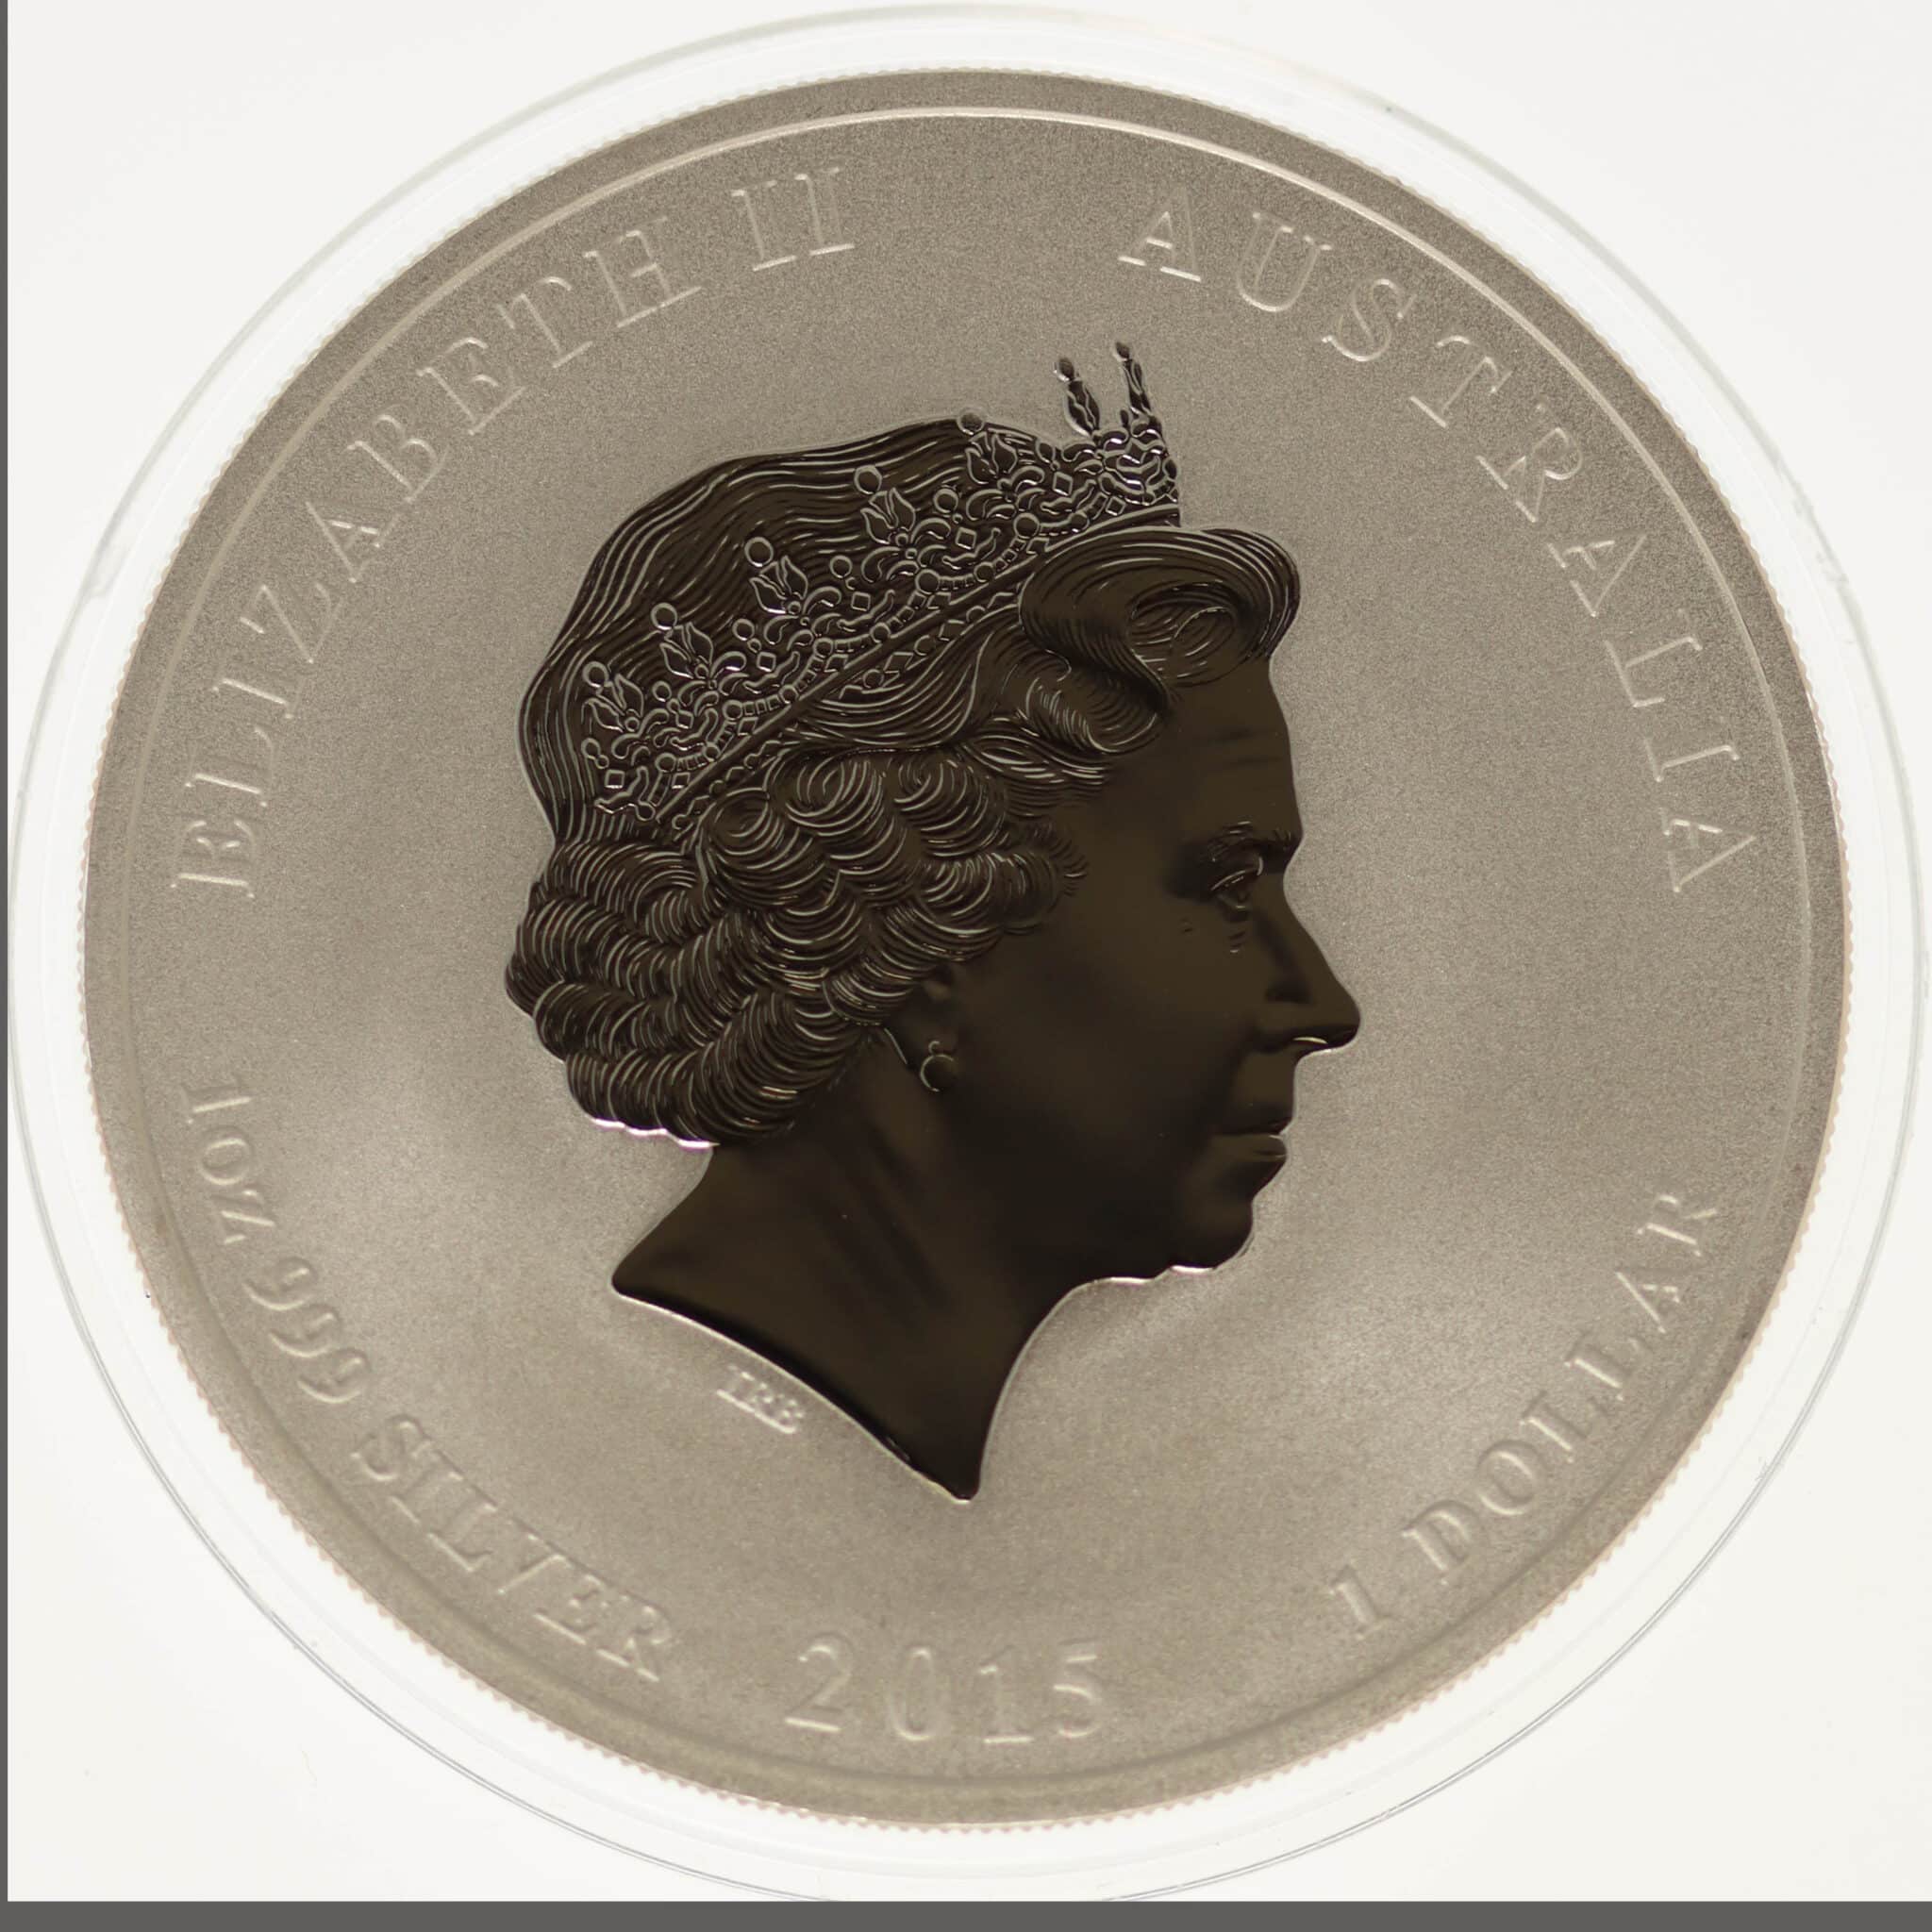 australien-silbermuenzen-uebrige-welt - Australien Elisabeth II. 1 Dollar 2015 Lunar II Ziege Privymark Löwe